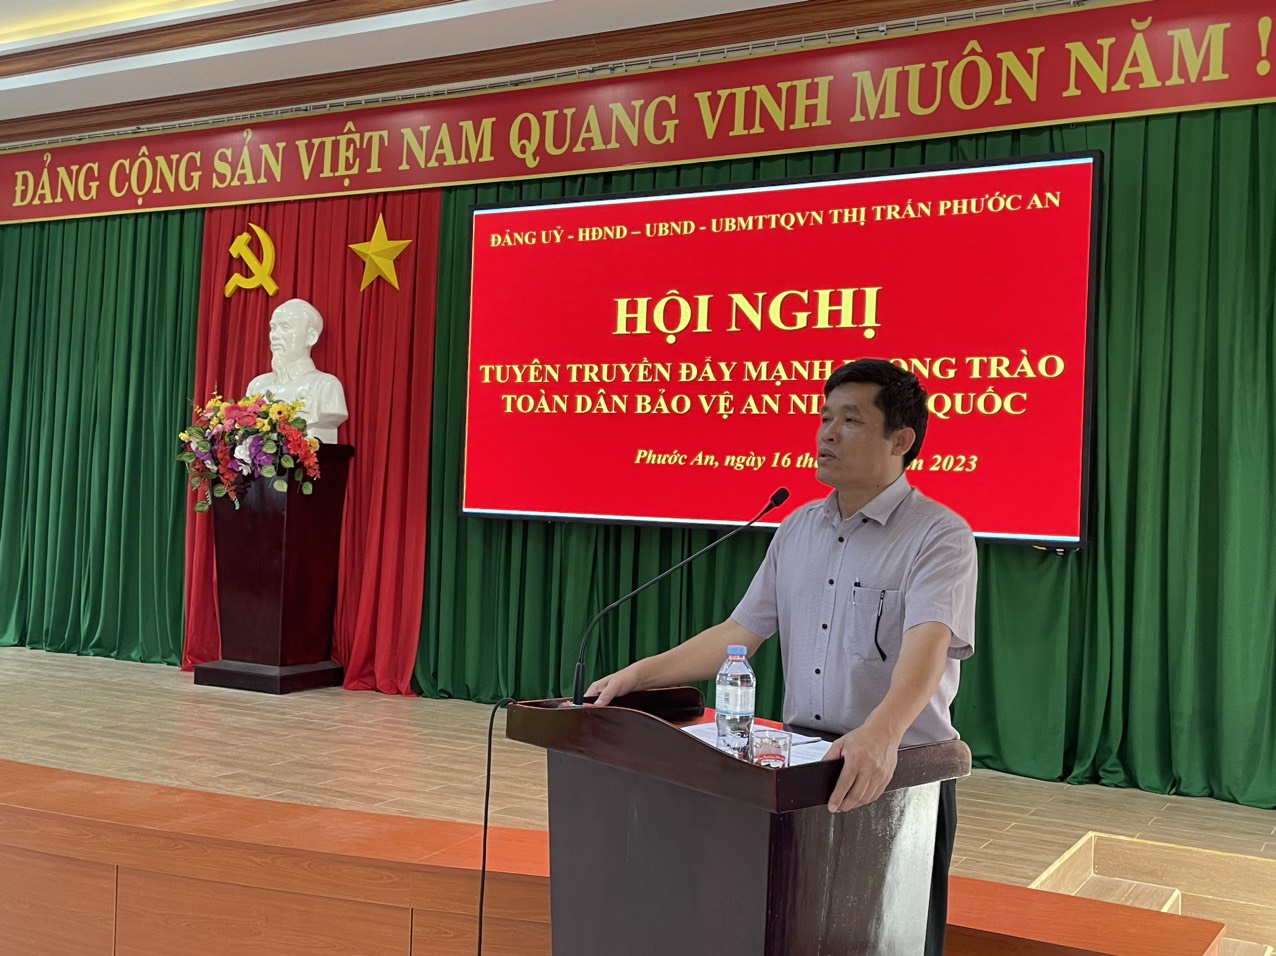 Đảng ủy thị trấn Phước An tổ chức Hội nghị tuyên truyền đẩy mạnh phong trào toàn dân bảo vệ an ninh tổ quốc